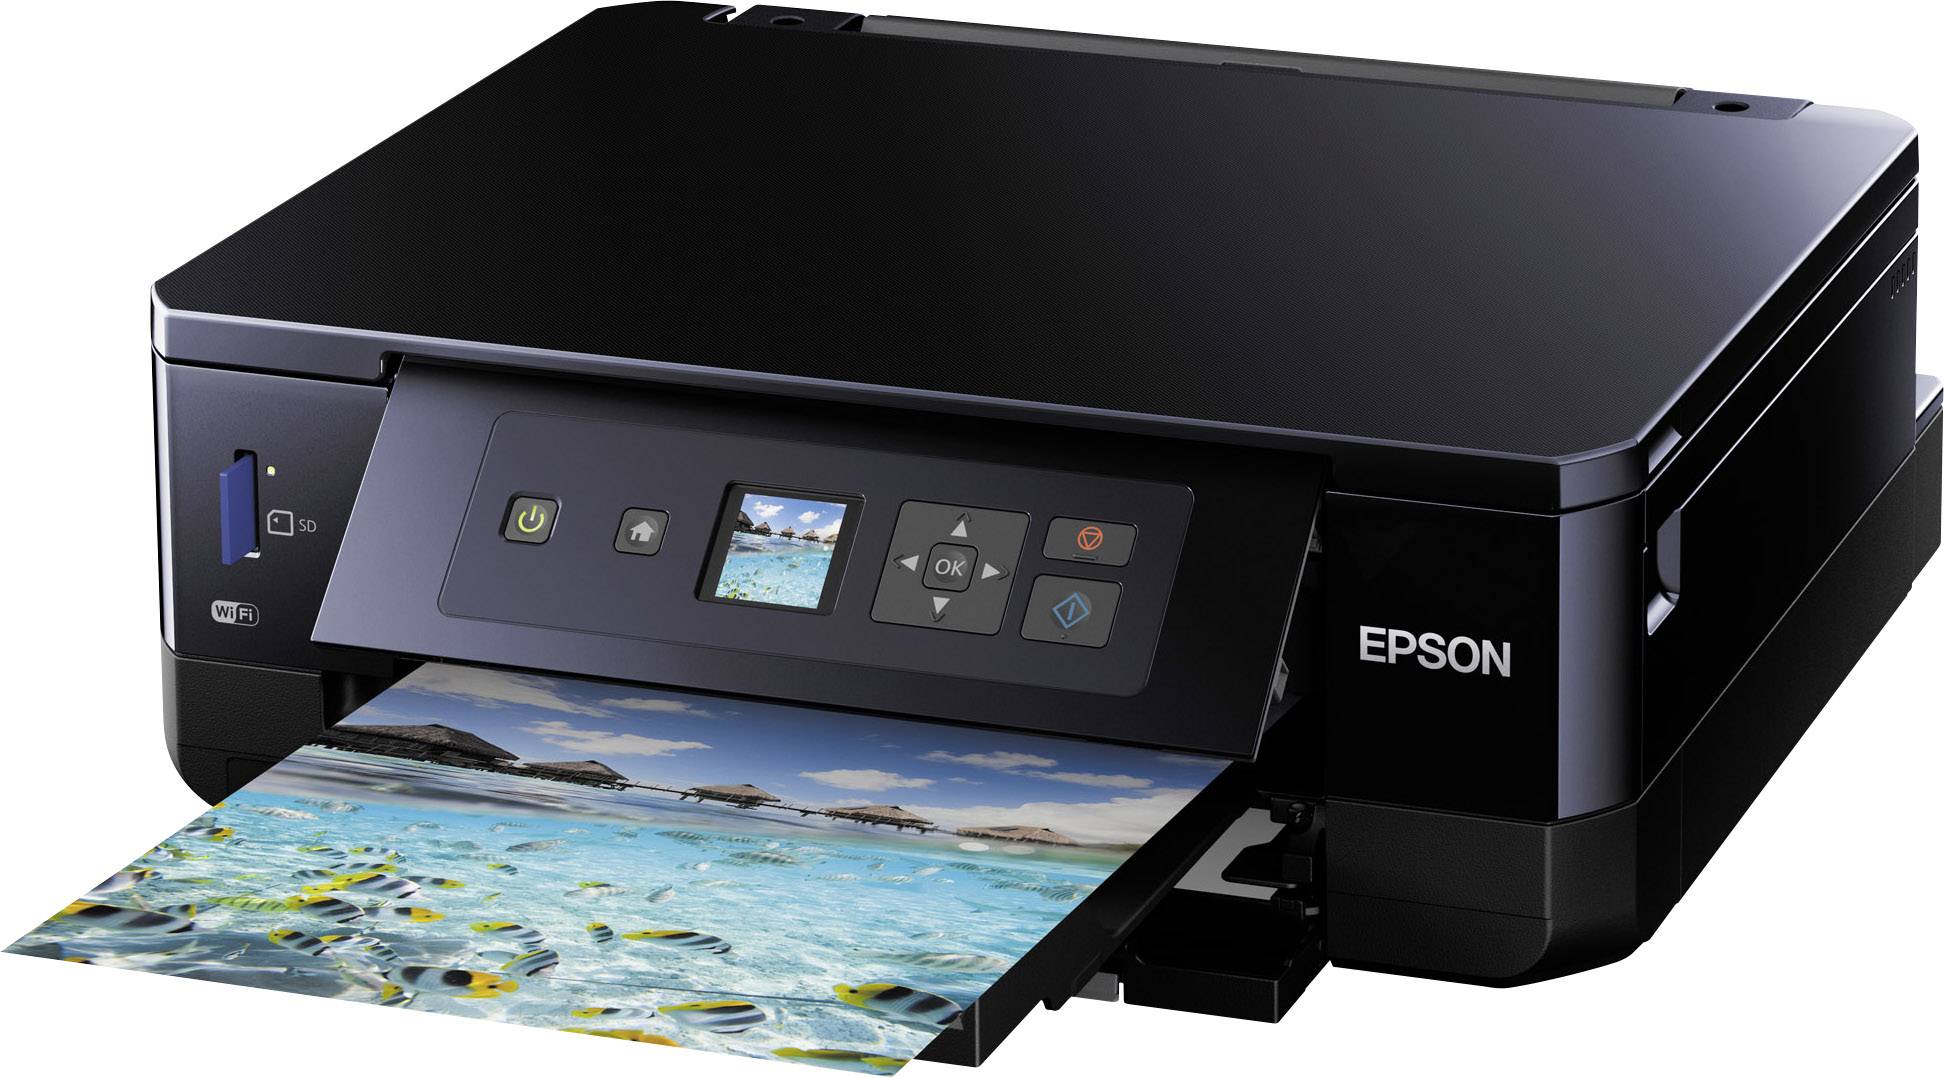  Epson  Expression Premium XP  540  Imprimante multifonction  